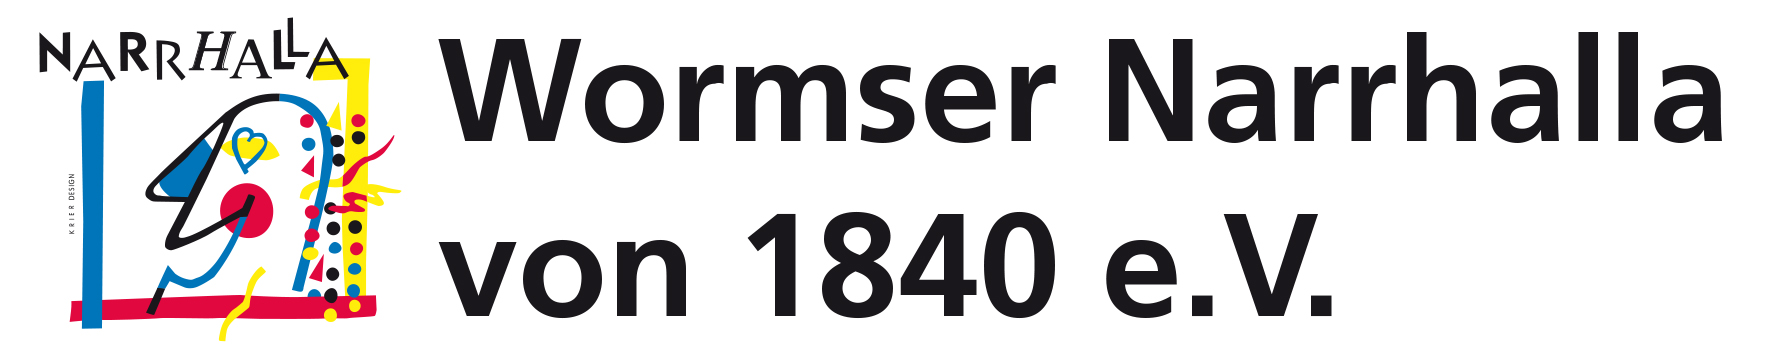 Ticketsystem der Wormser Narrhalla von 1840 e.V.